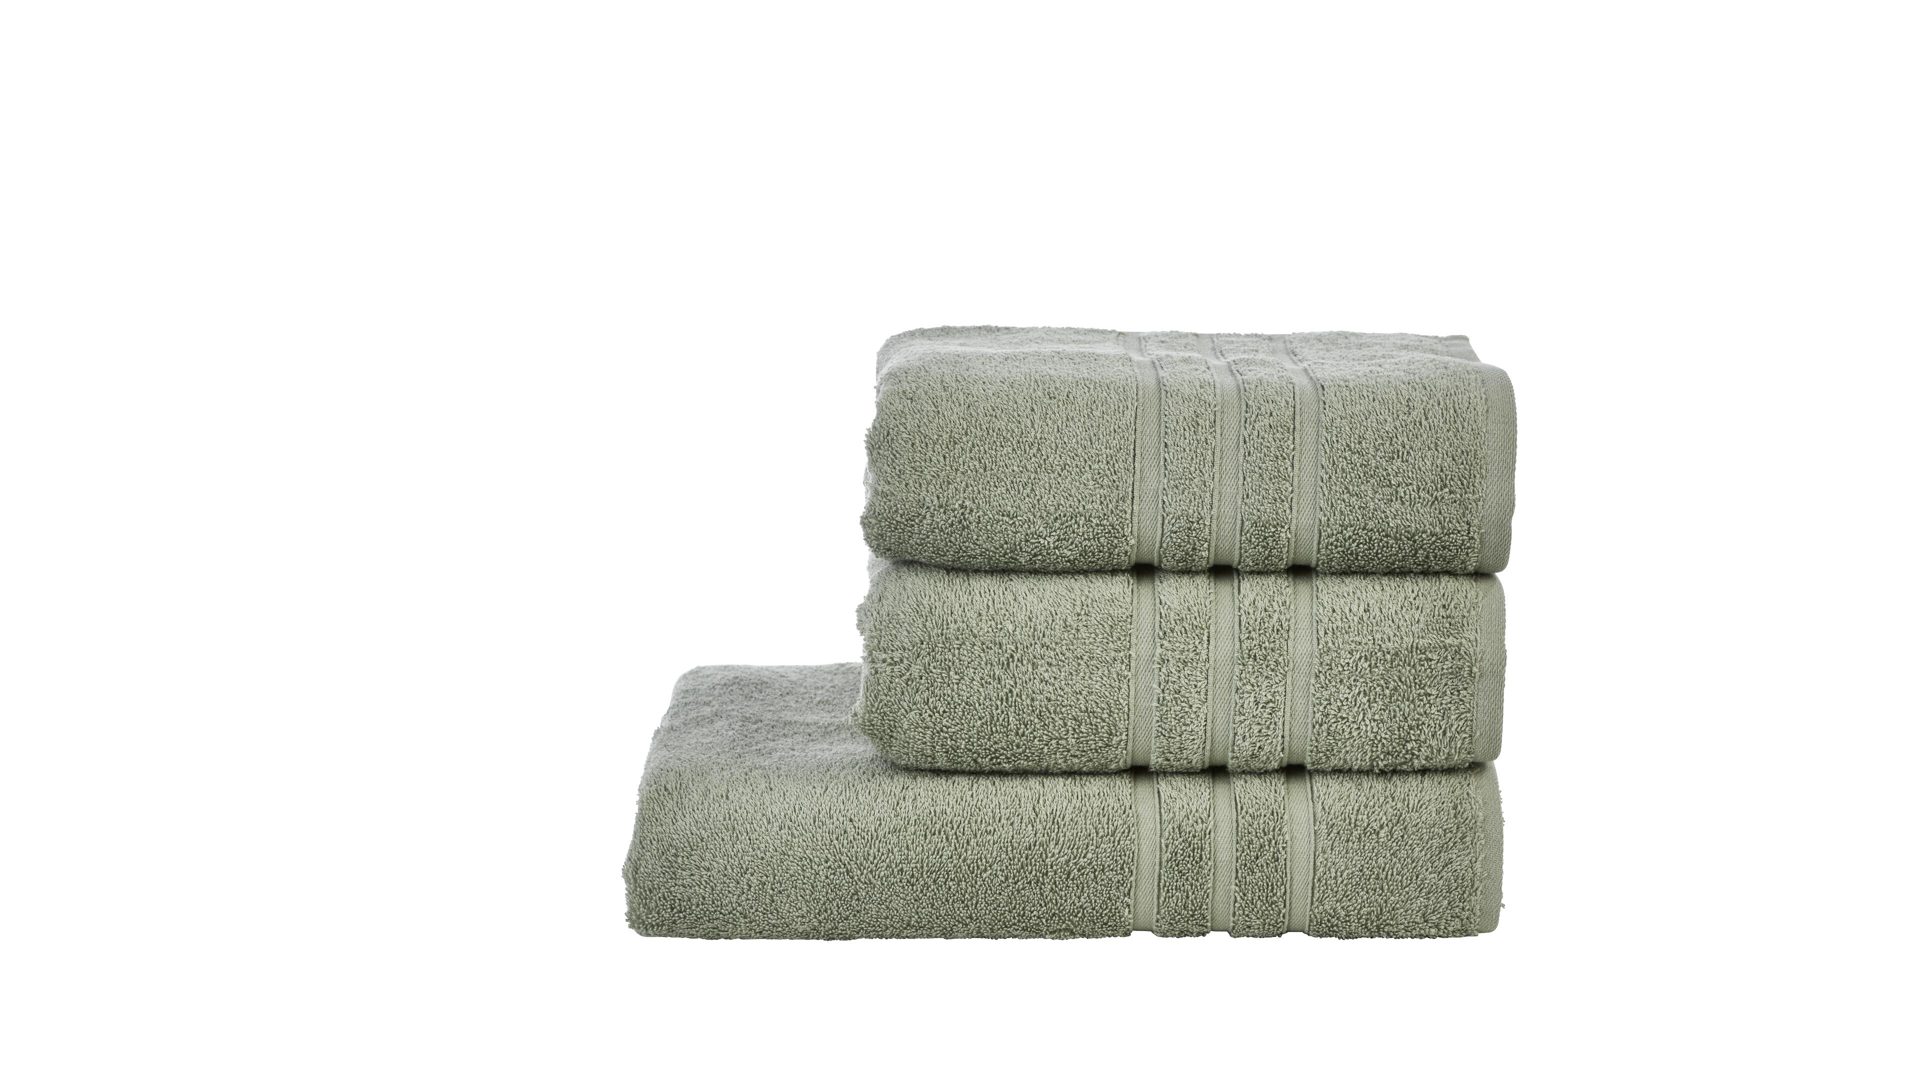 Handtuch-Set Done by karabel home company aus Stoff in Grün Done Handtuch-Set Daily Uni khakifarbene Baumwolle – dreiteilig